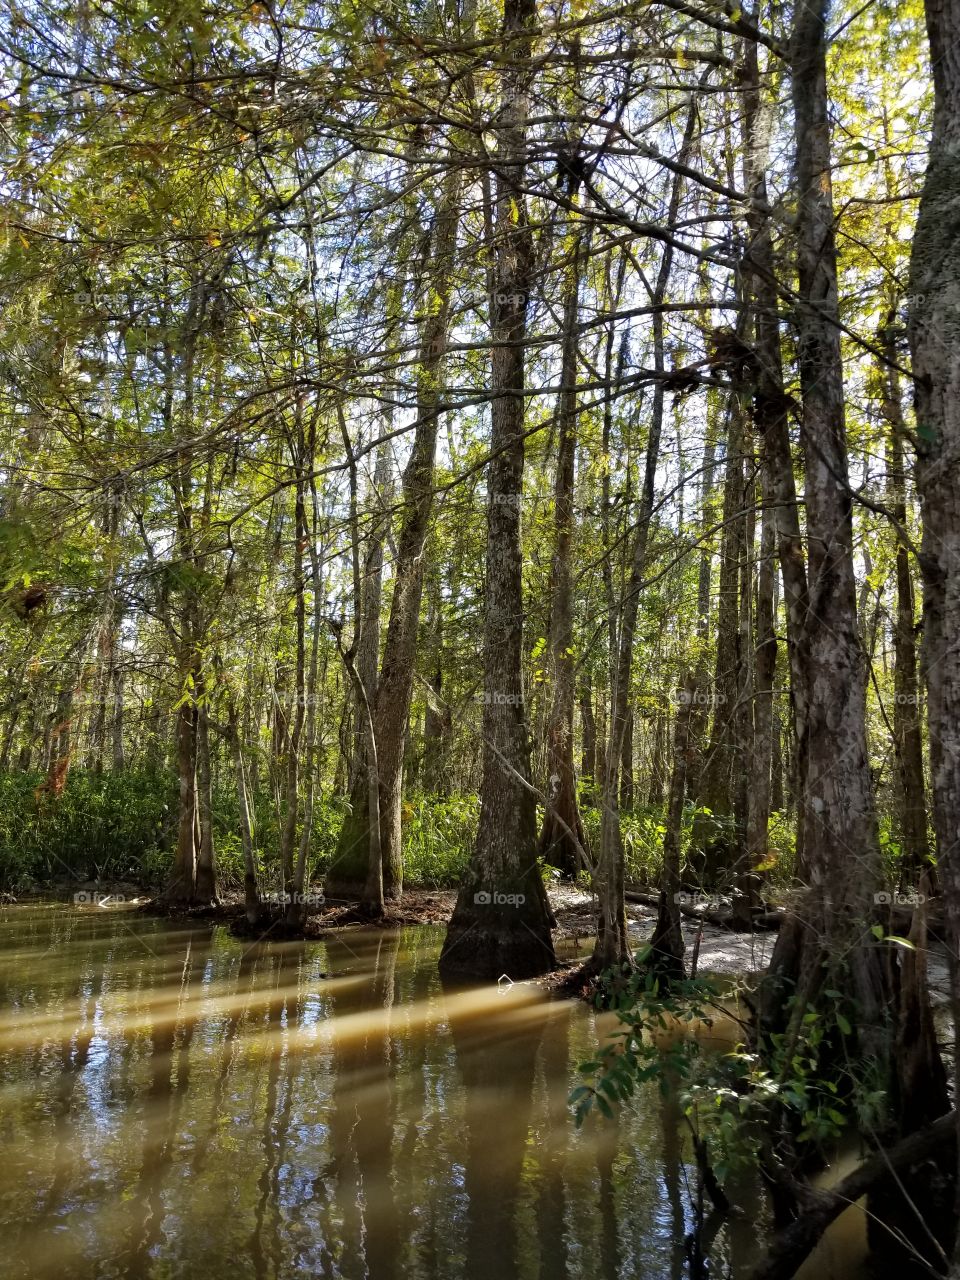 Louisiana swamp tour